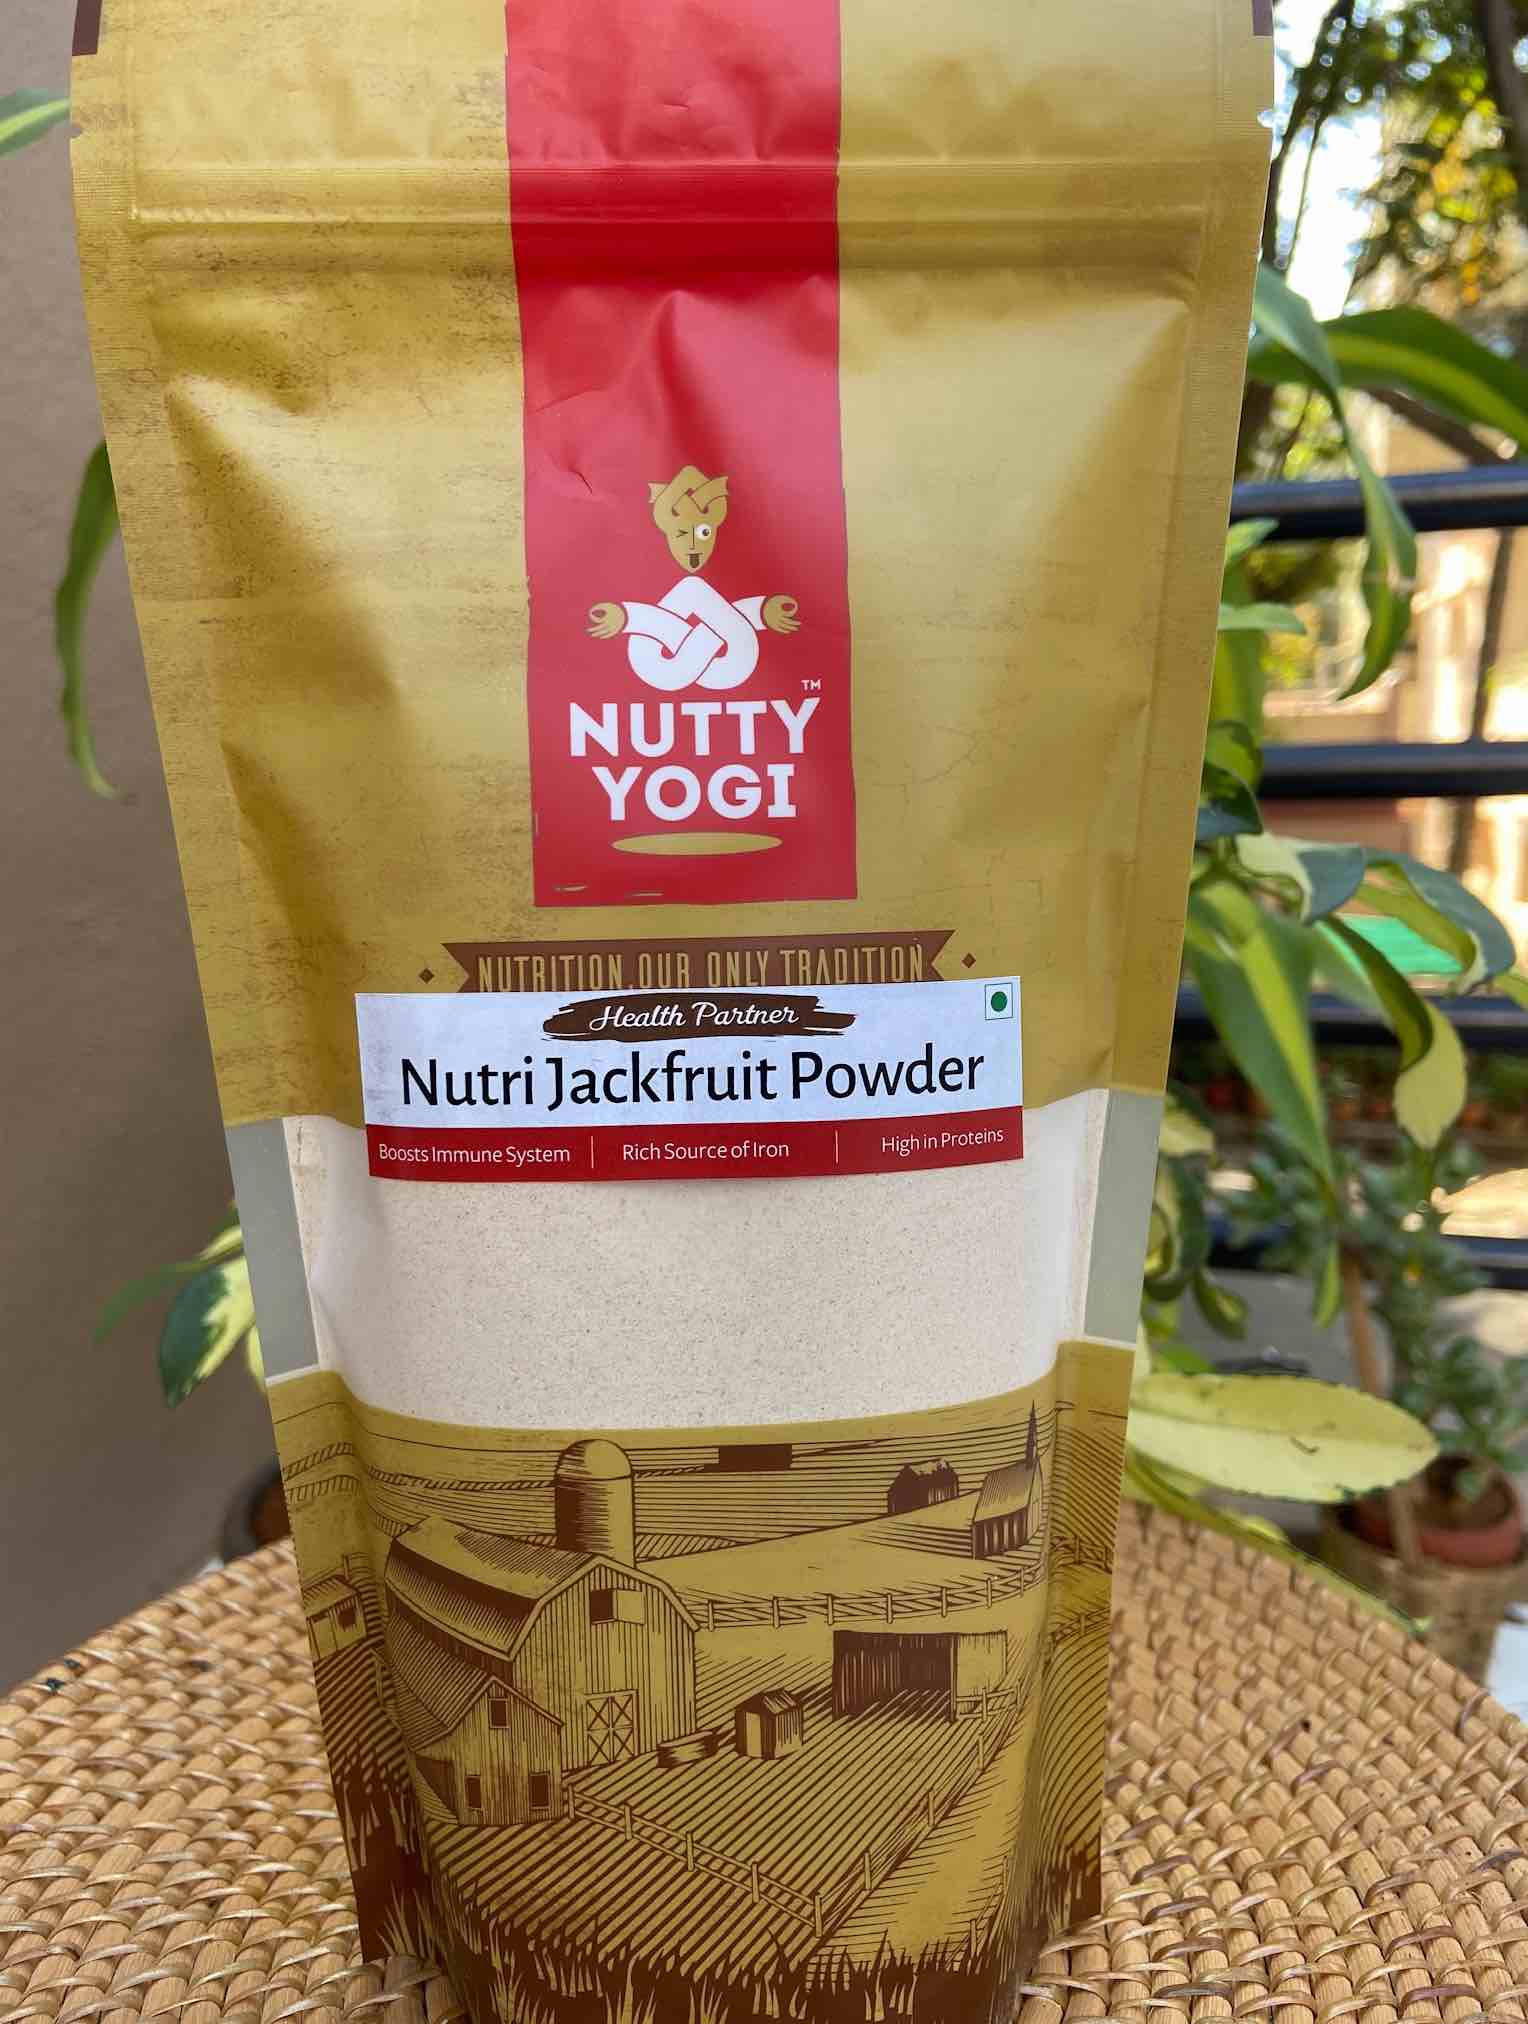 Nutty Yogi Nutri Jackfruit Powder